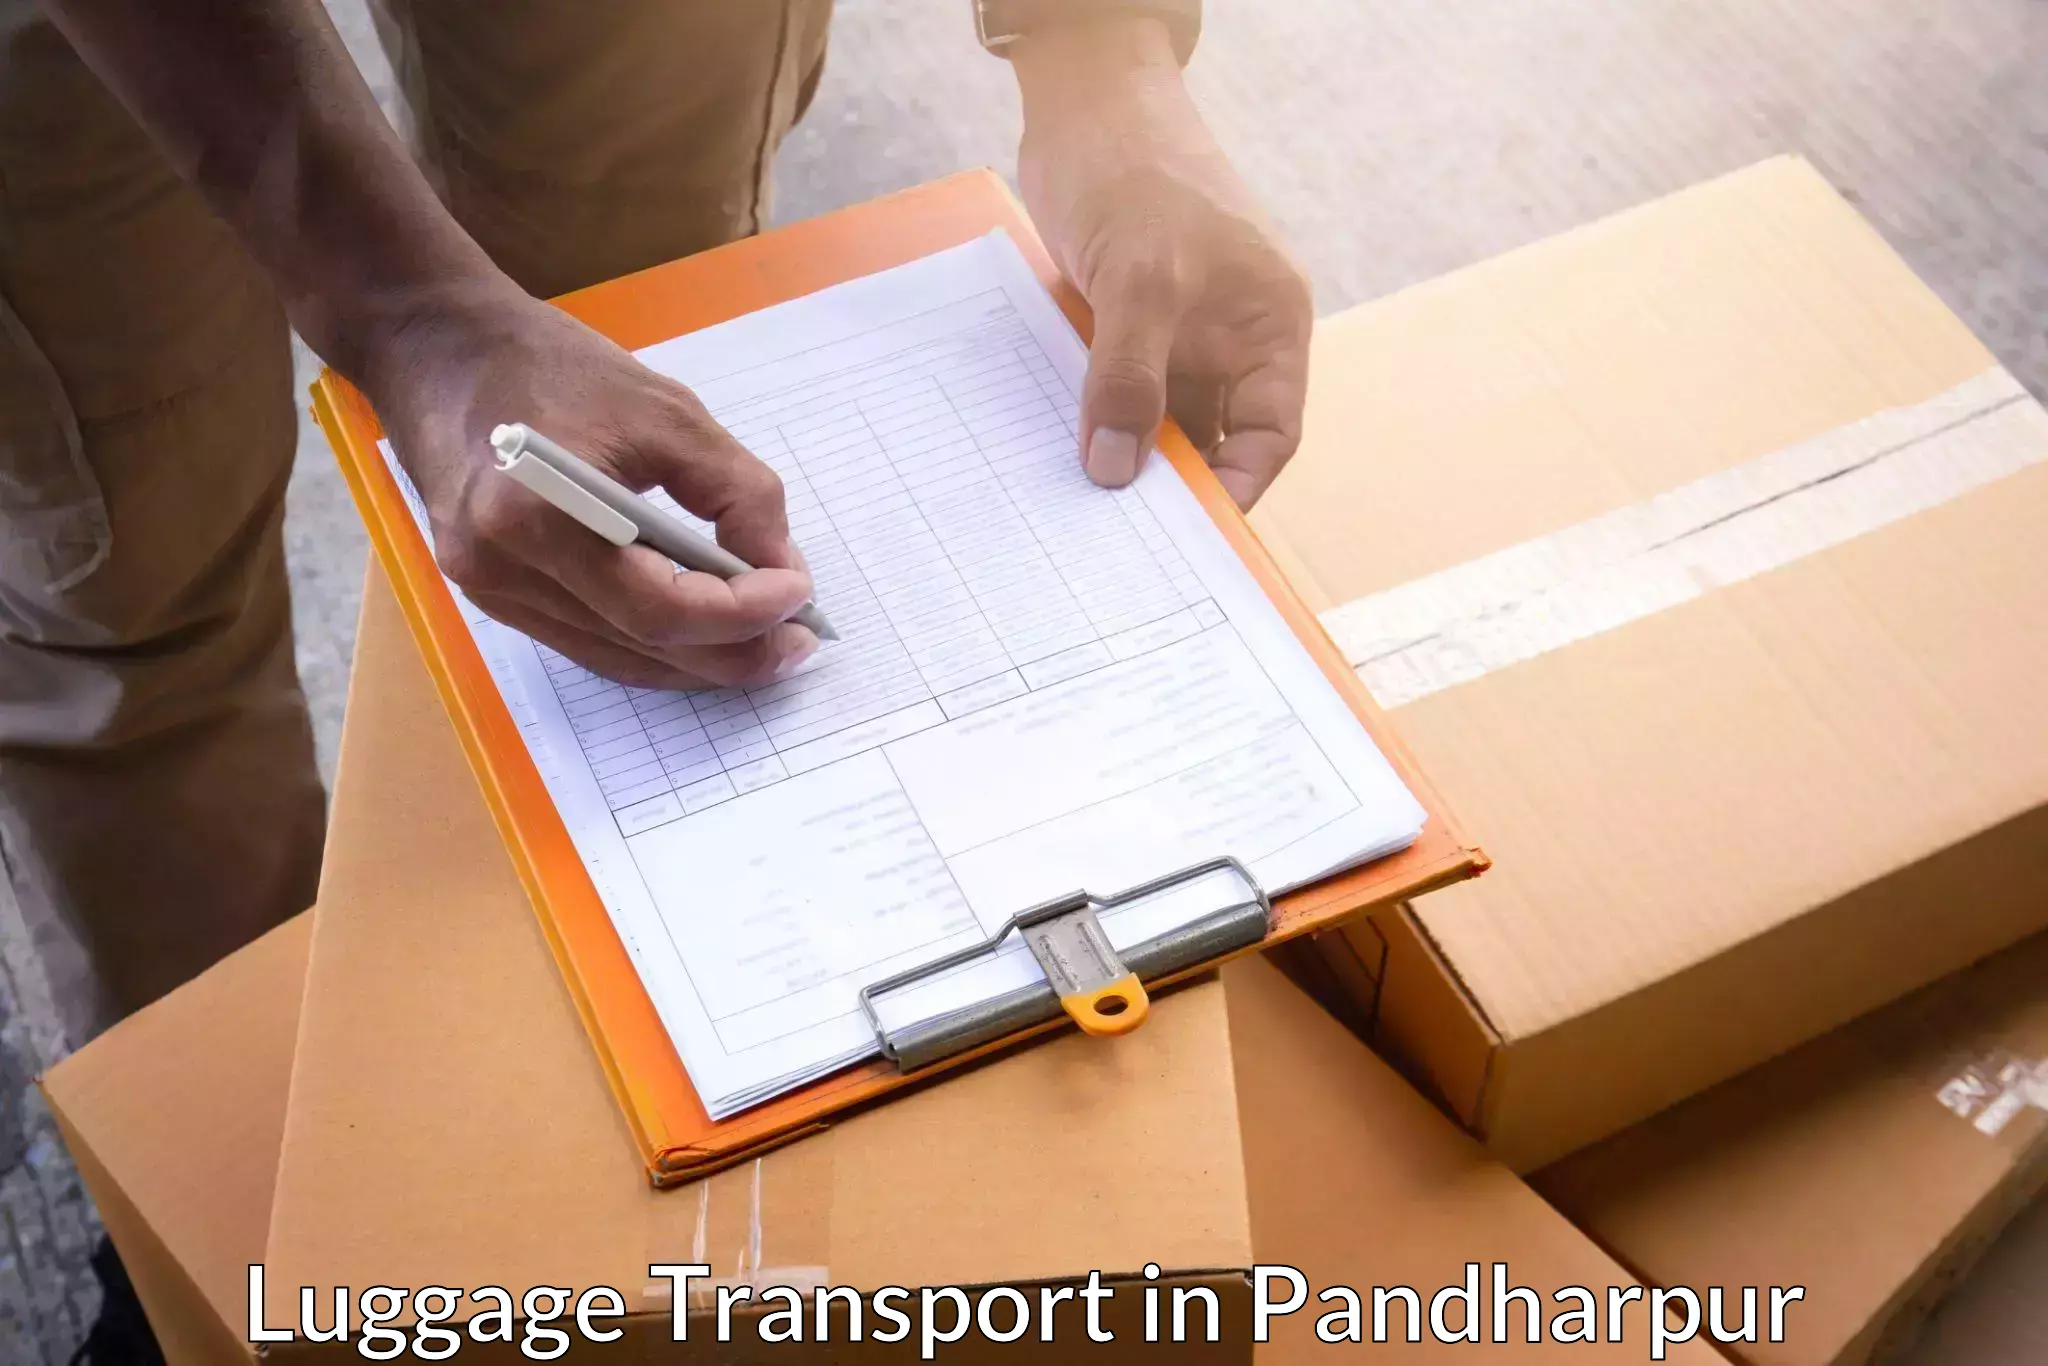 Luggage transport tips in Pandharpur